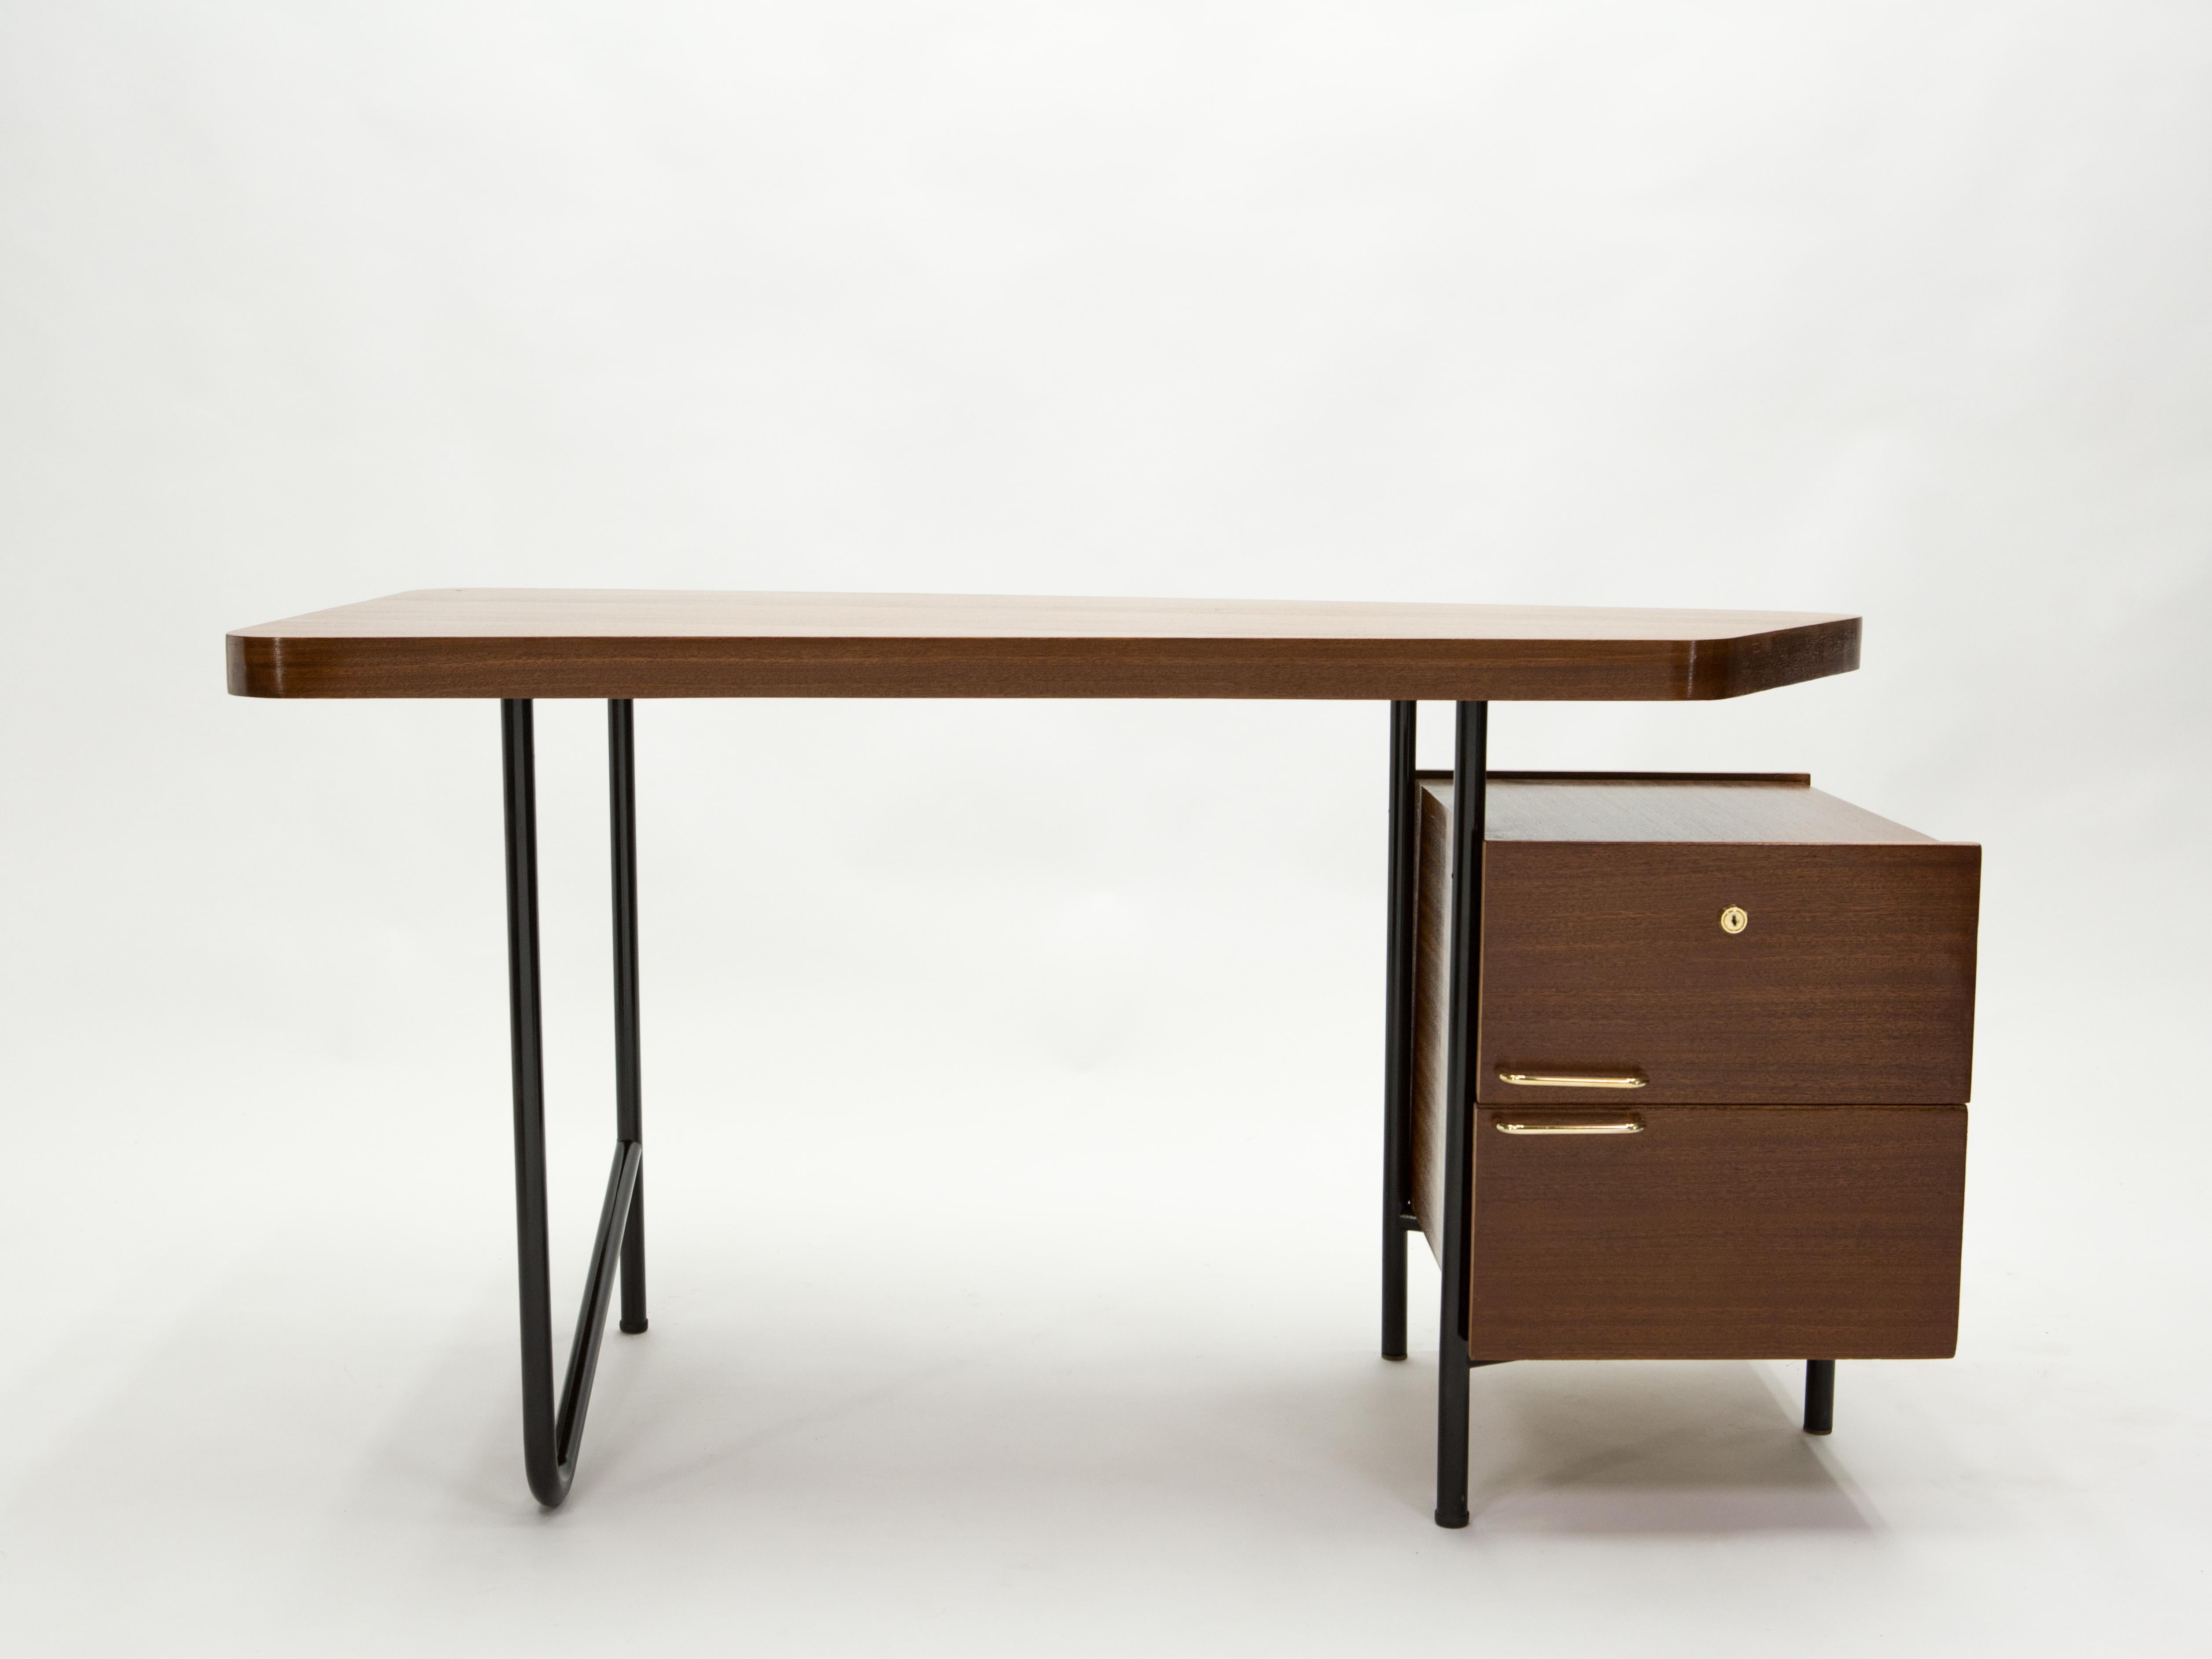 Dieser seltene und schöne Schreibtisch der französischen Moderne wurde Ende der 1950er Jahre von Georges Frydman für den EFA-Verlag hergestellt. Die asymmetrische Platte ist vollständig mahagonifarben furniert, die zwei Schubladen sind mit